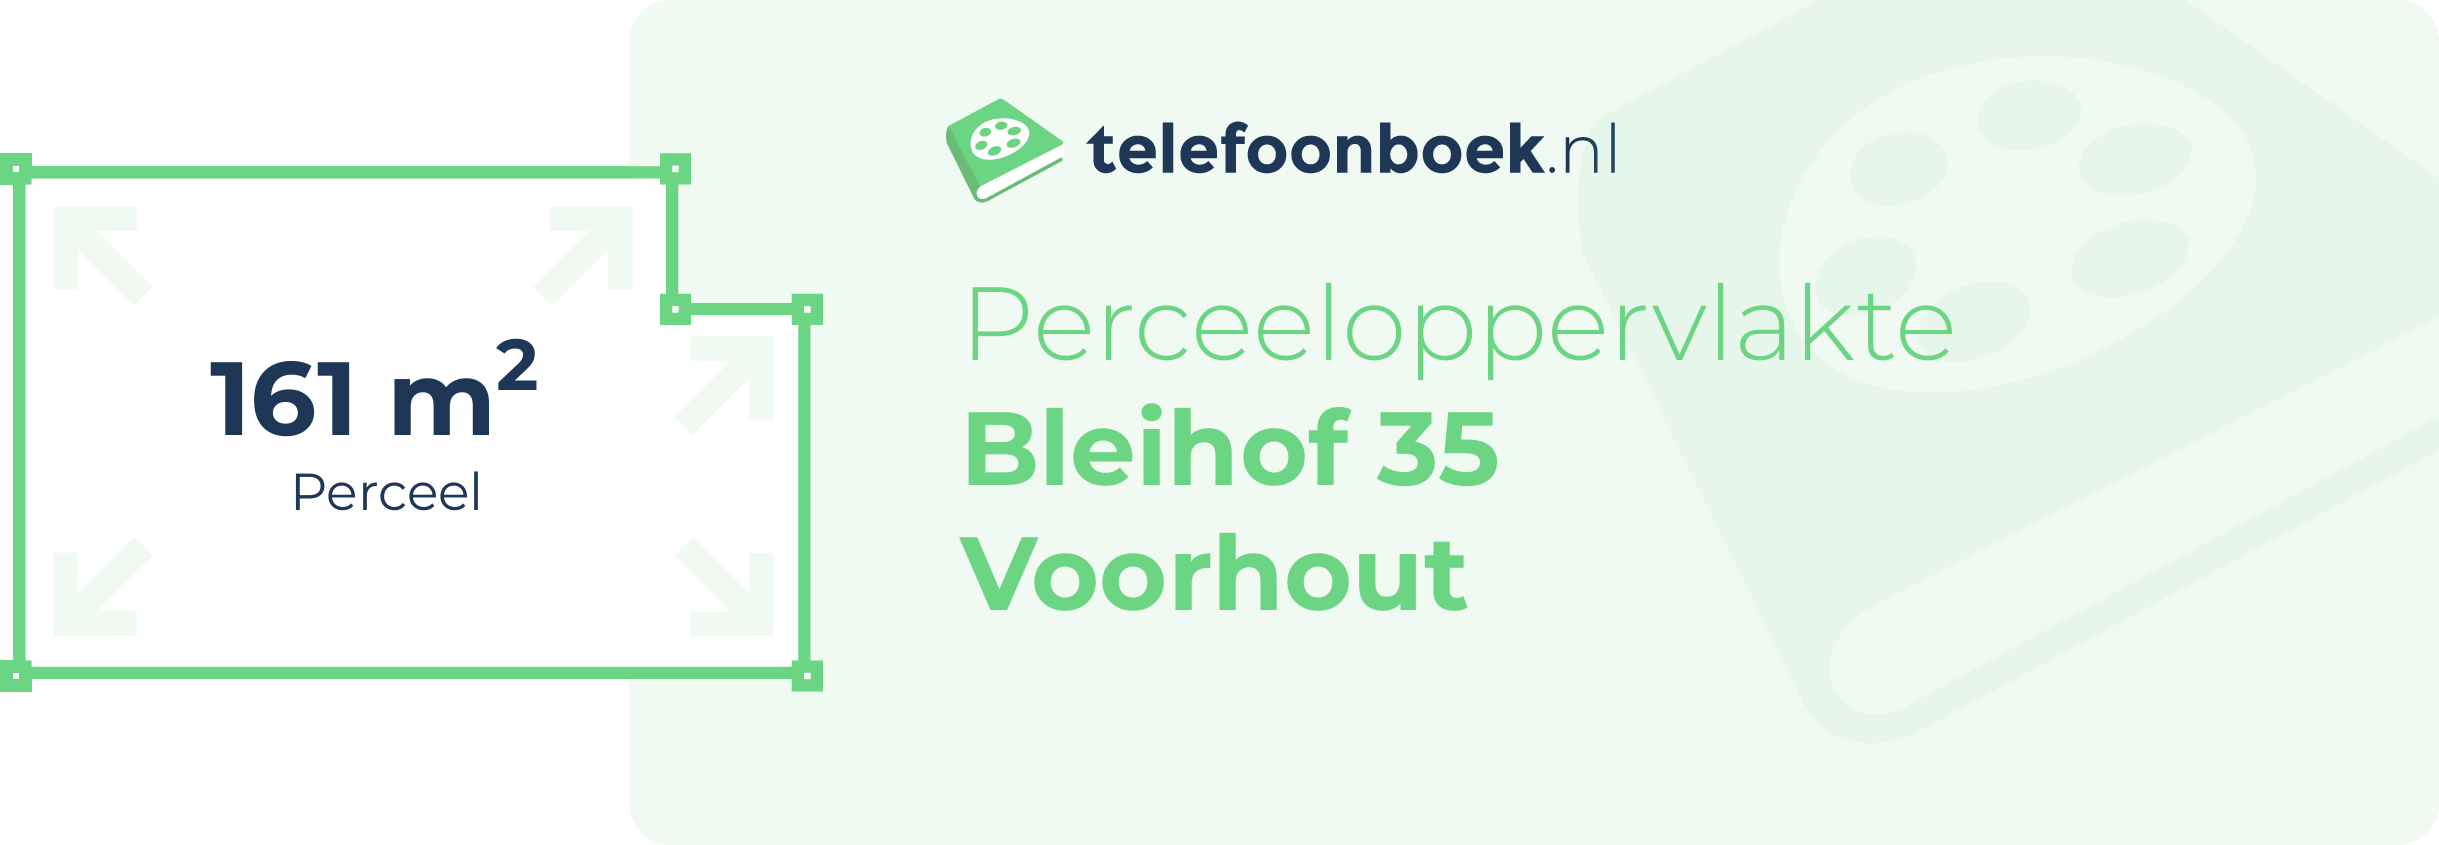 Perceeloppervlakte Bleihof 35 Voorhout